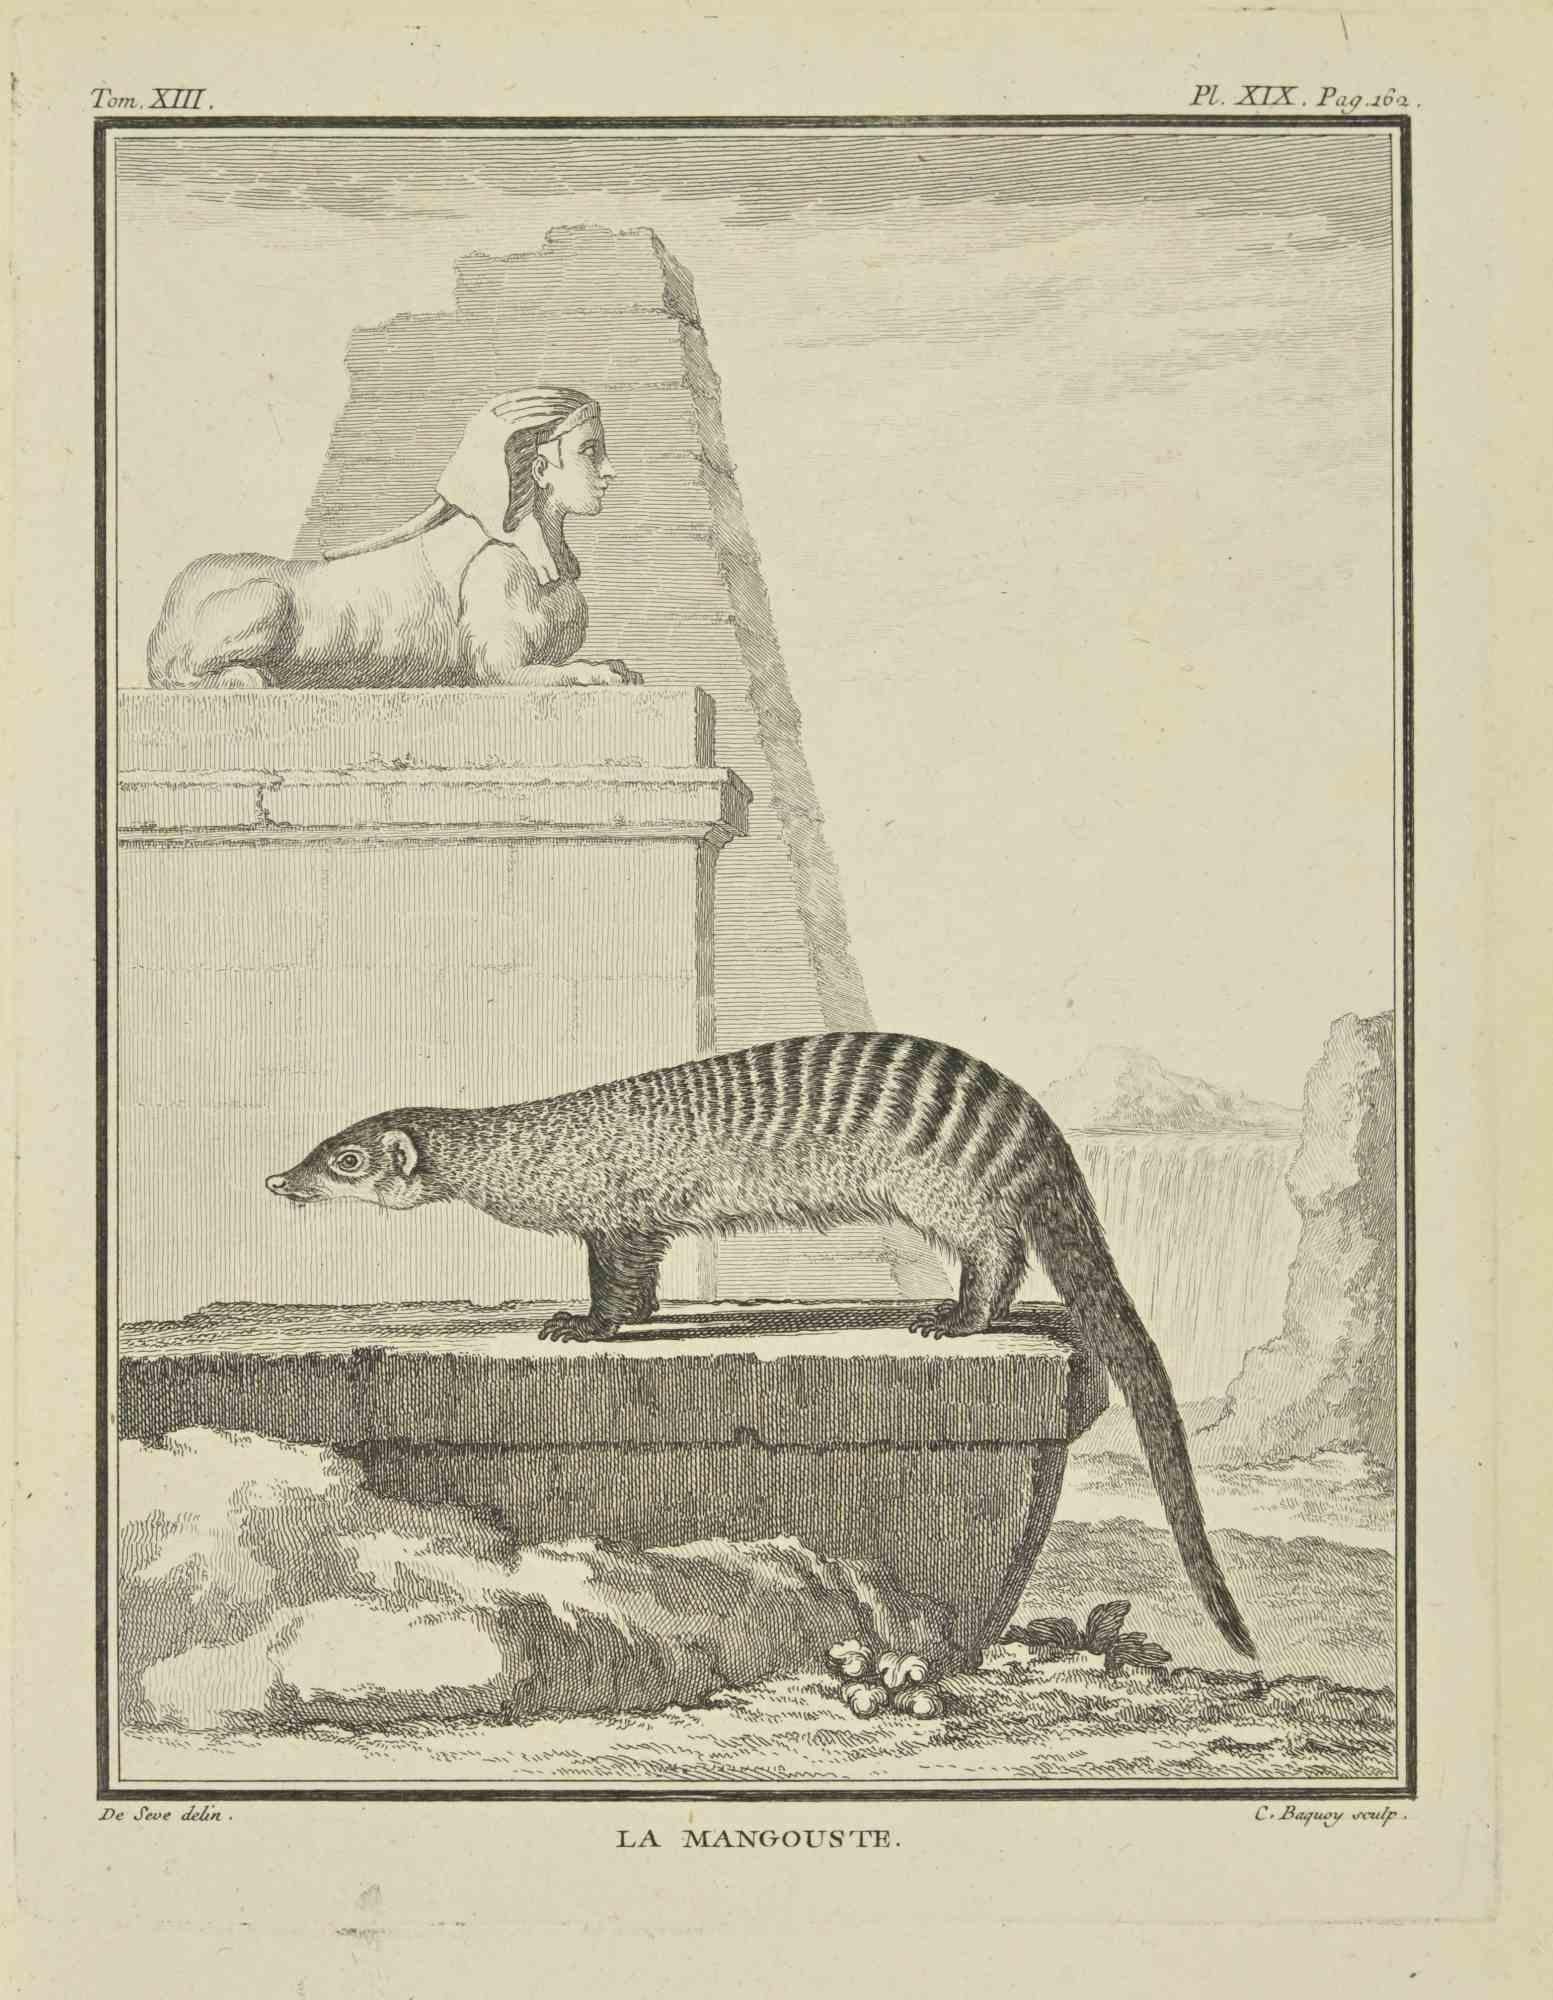 La Mangouste est une gravure réalisée par Pierre Charles Baquoy en 1771.

Il appartient à la suite "Histoire naturelle, générale et particulière avec la description du Cabinet du Roi".

 
Pierre Charles Baquoy (27 juillet 1759 - 4 février 1829)